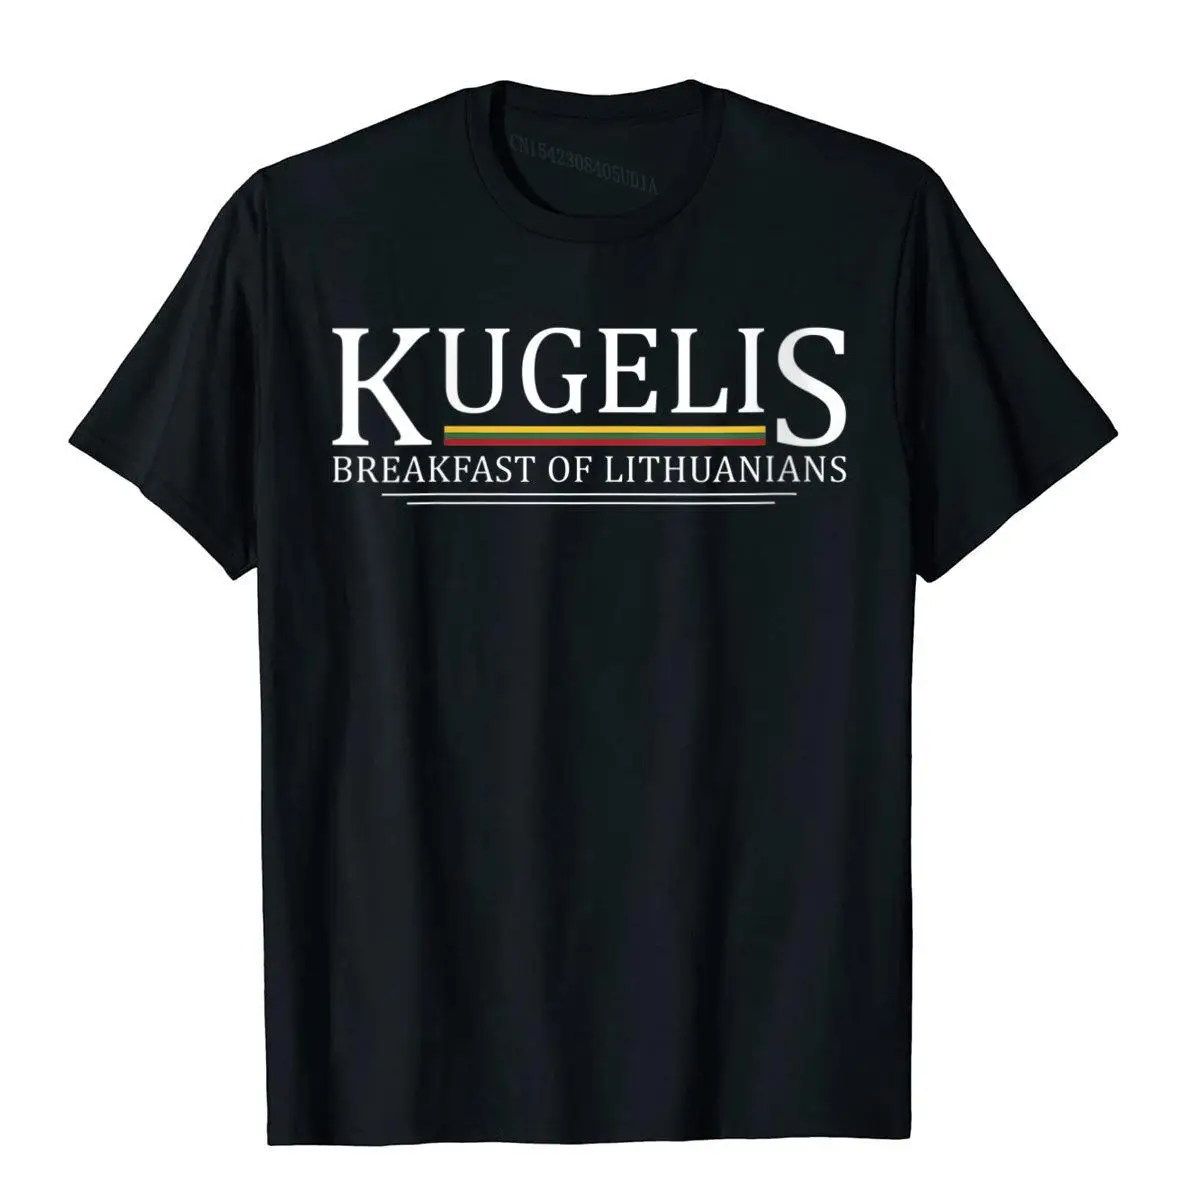 

Женская футболка Kugelis с изображением литовских завтраков, забавная футболка с изображением Литовской еды, Дешевые Молодежные топы, футболки, сумасшедшая футболка из хлопка, удобная